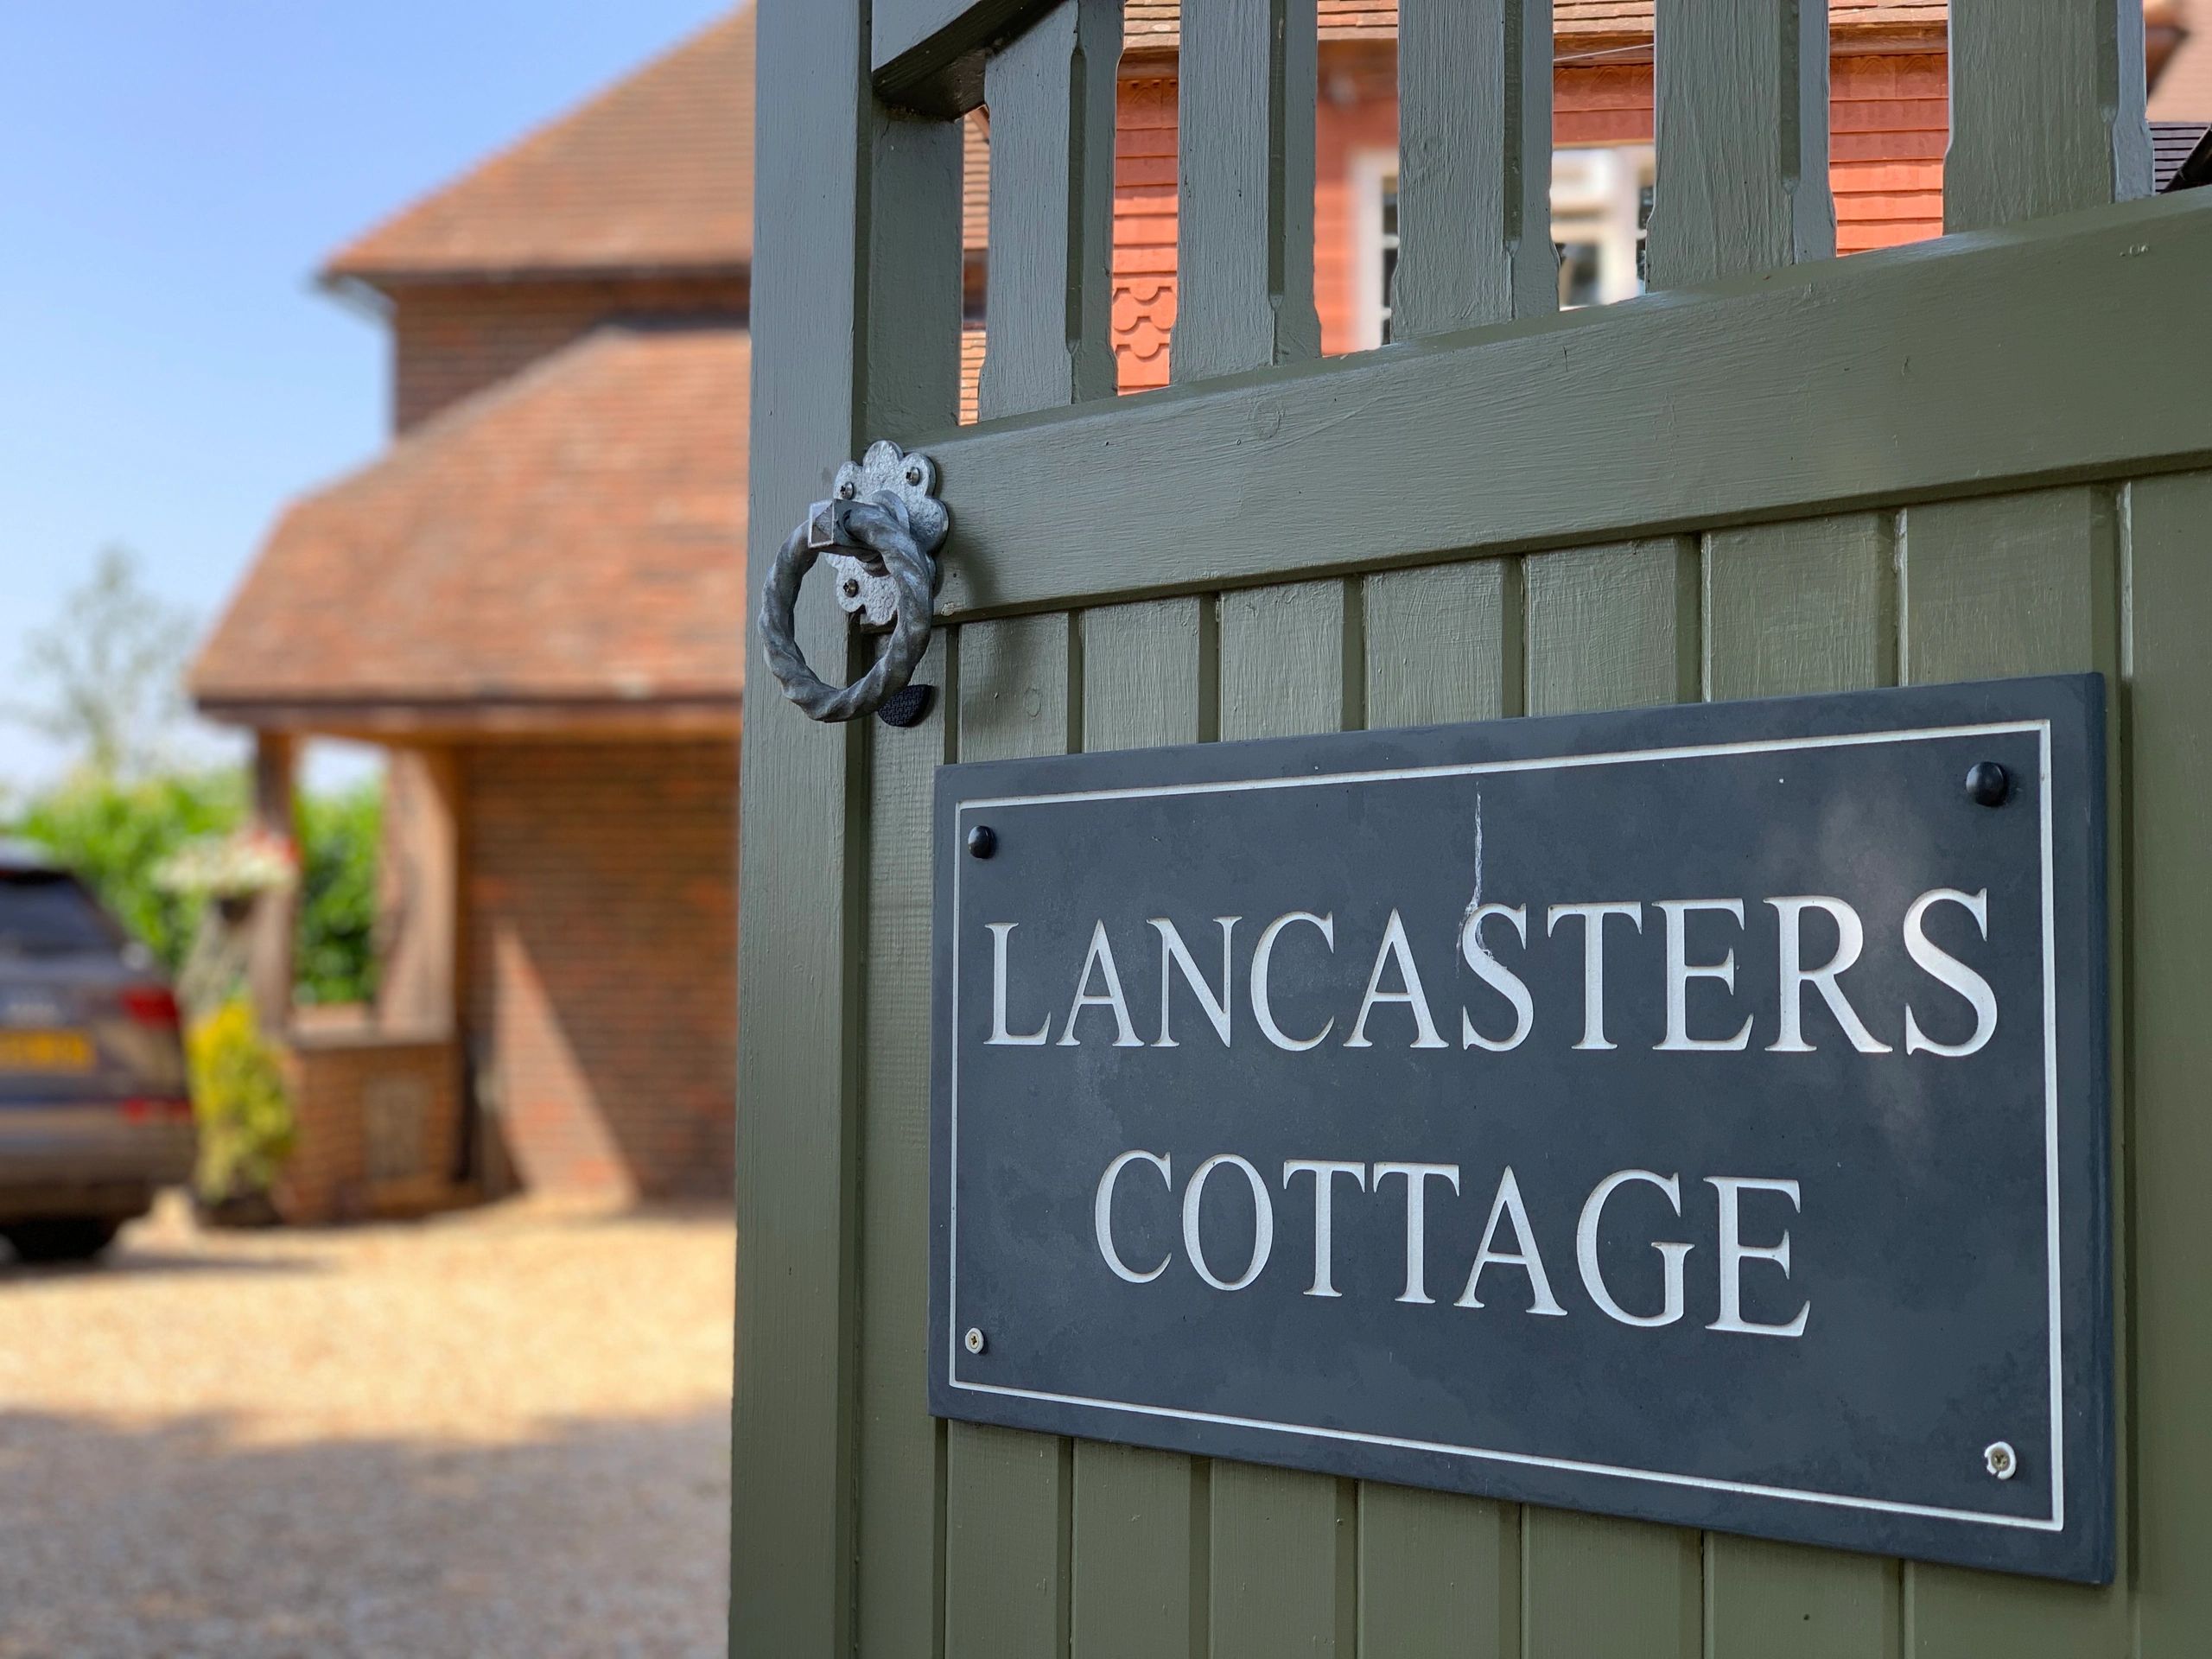 #lancasterscottage #westsussex #horsham #partridgegreen